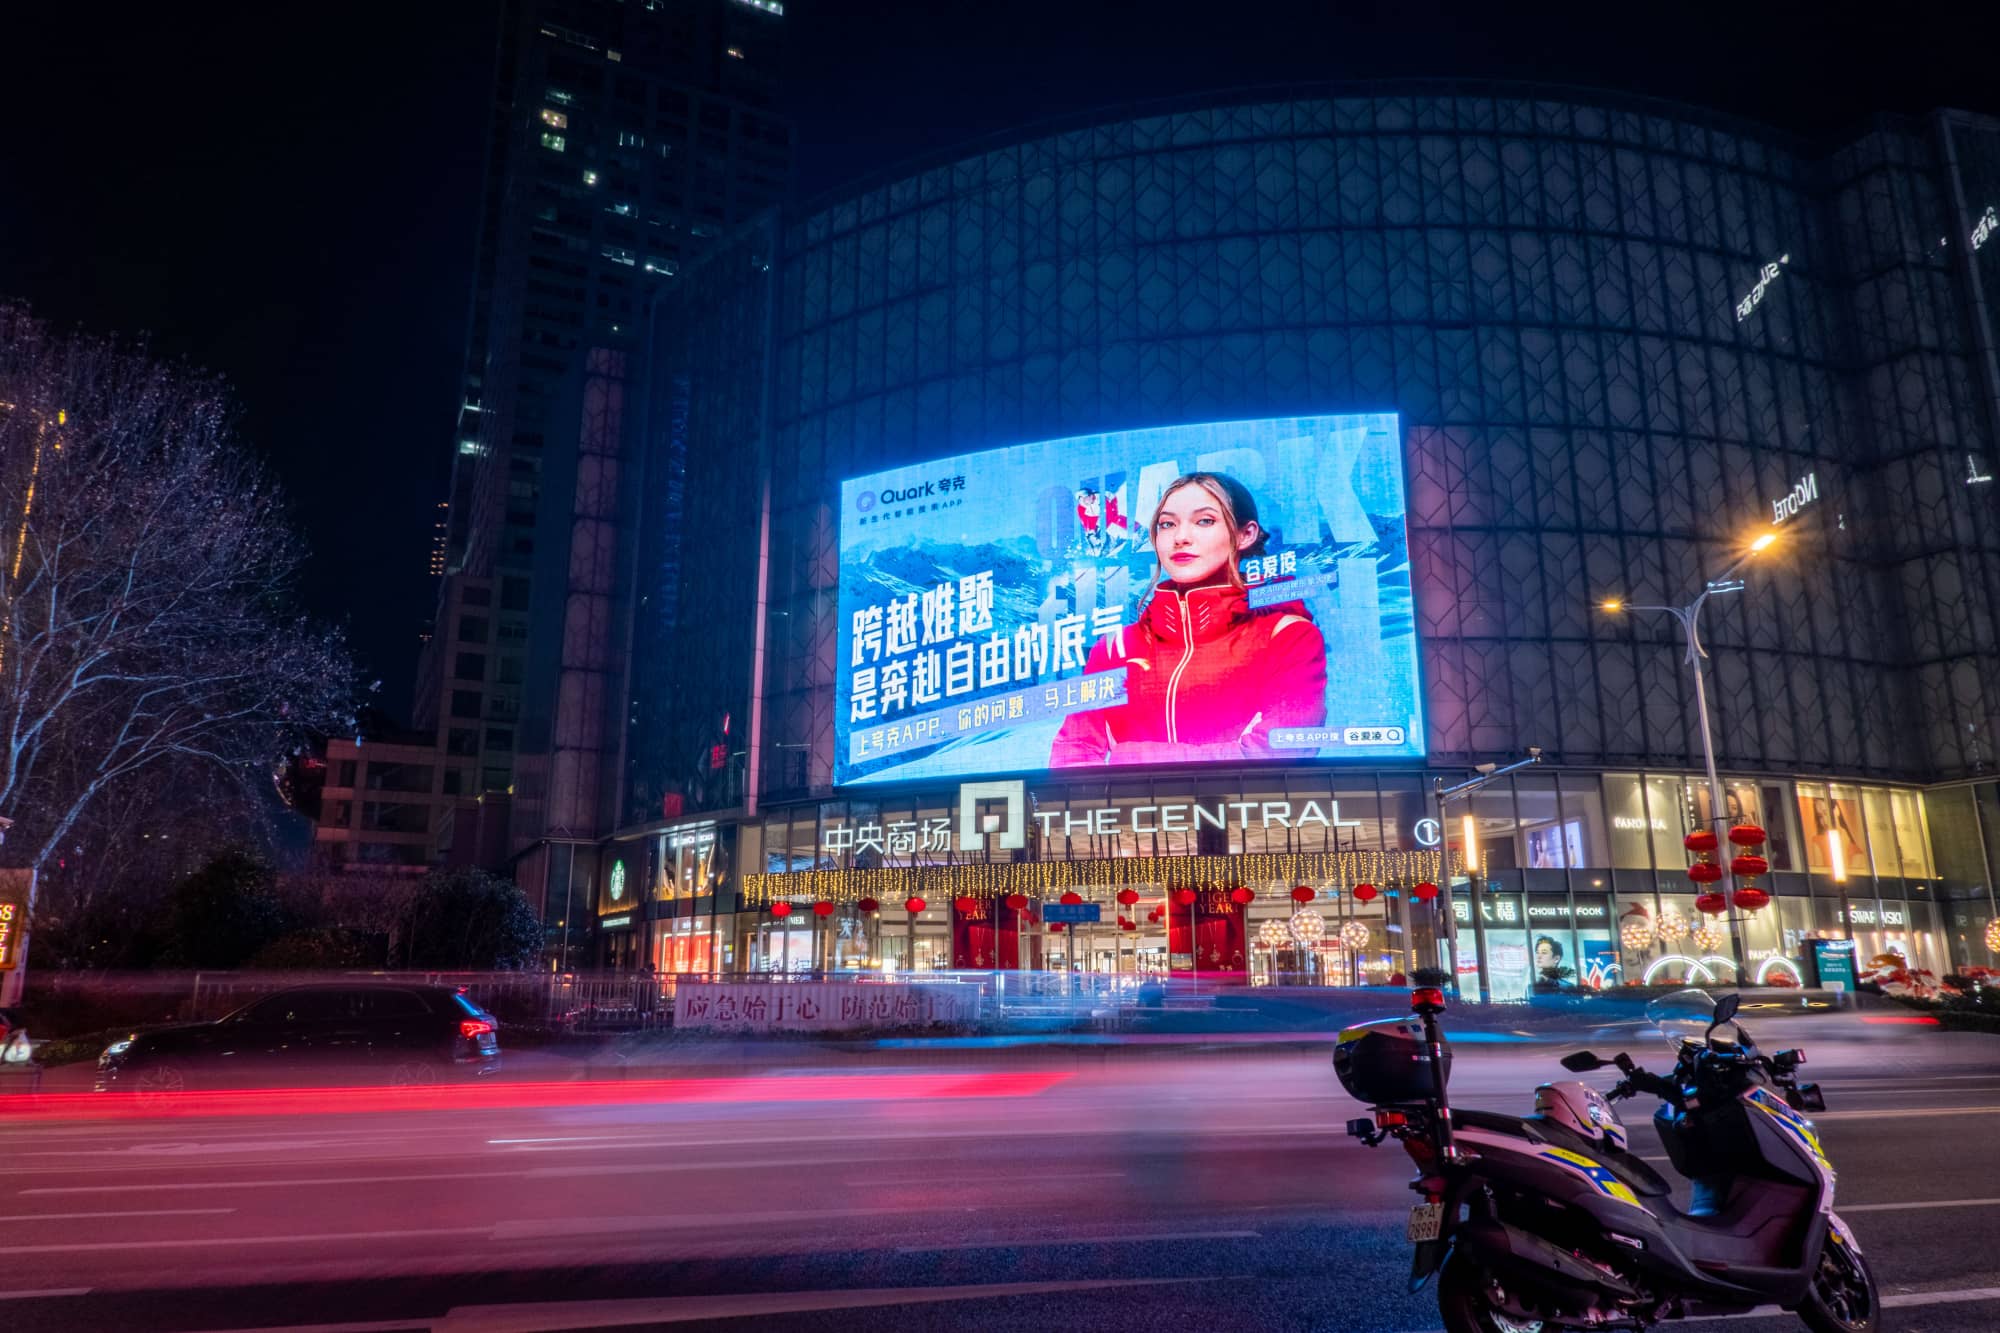 谷爱凌代言夸克APP广告投放中央商场LED大屏